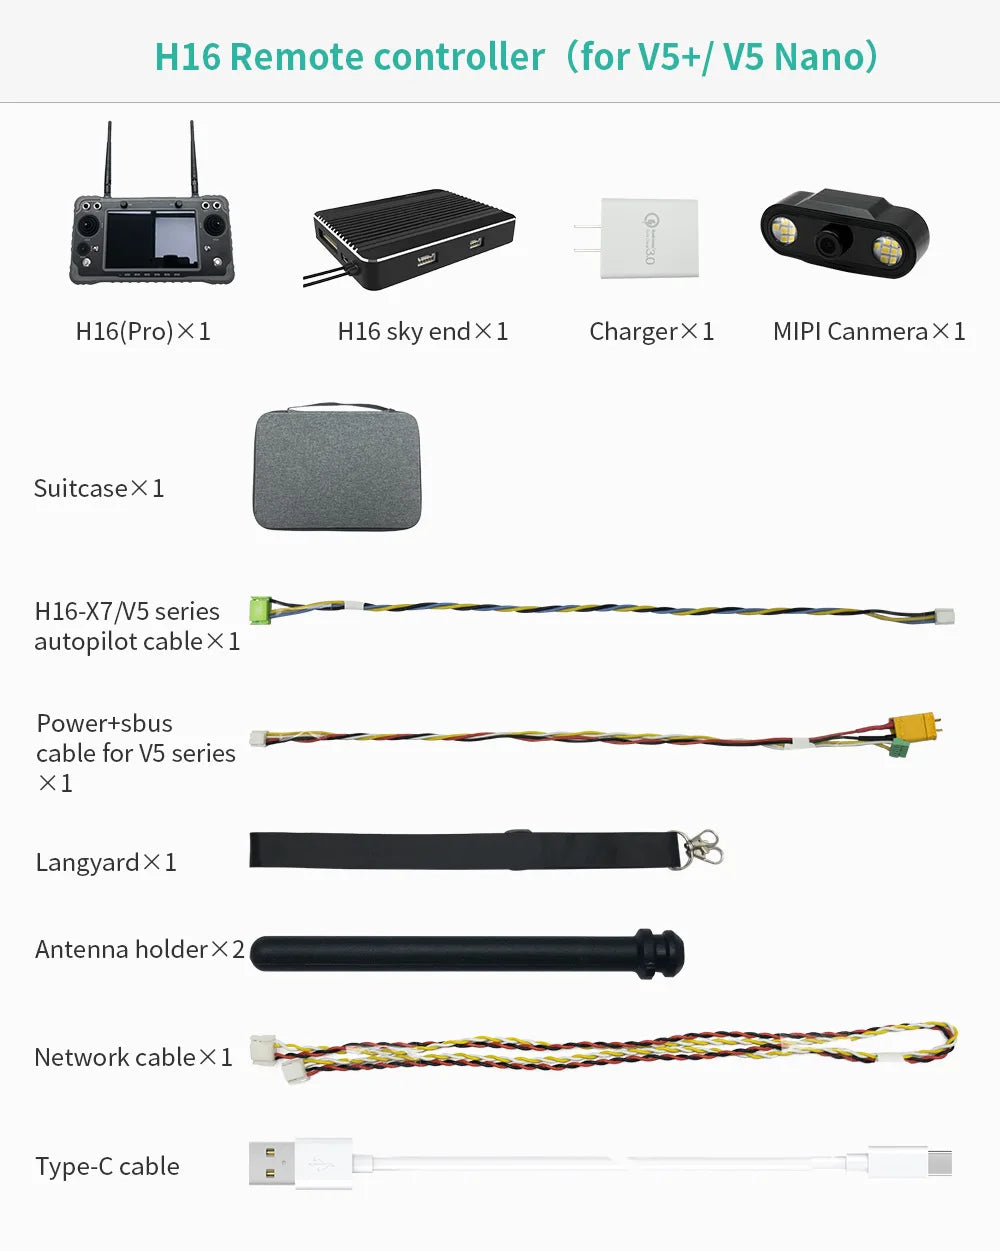 CUAV Black H16, H16-X7 N5 series autopilot cableXl Powertsbus cable for